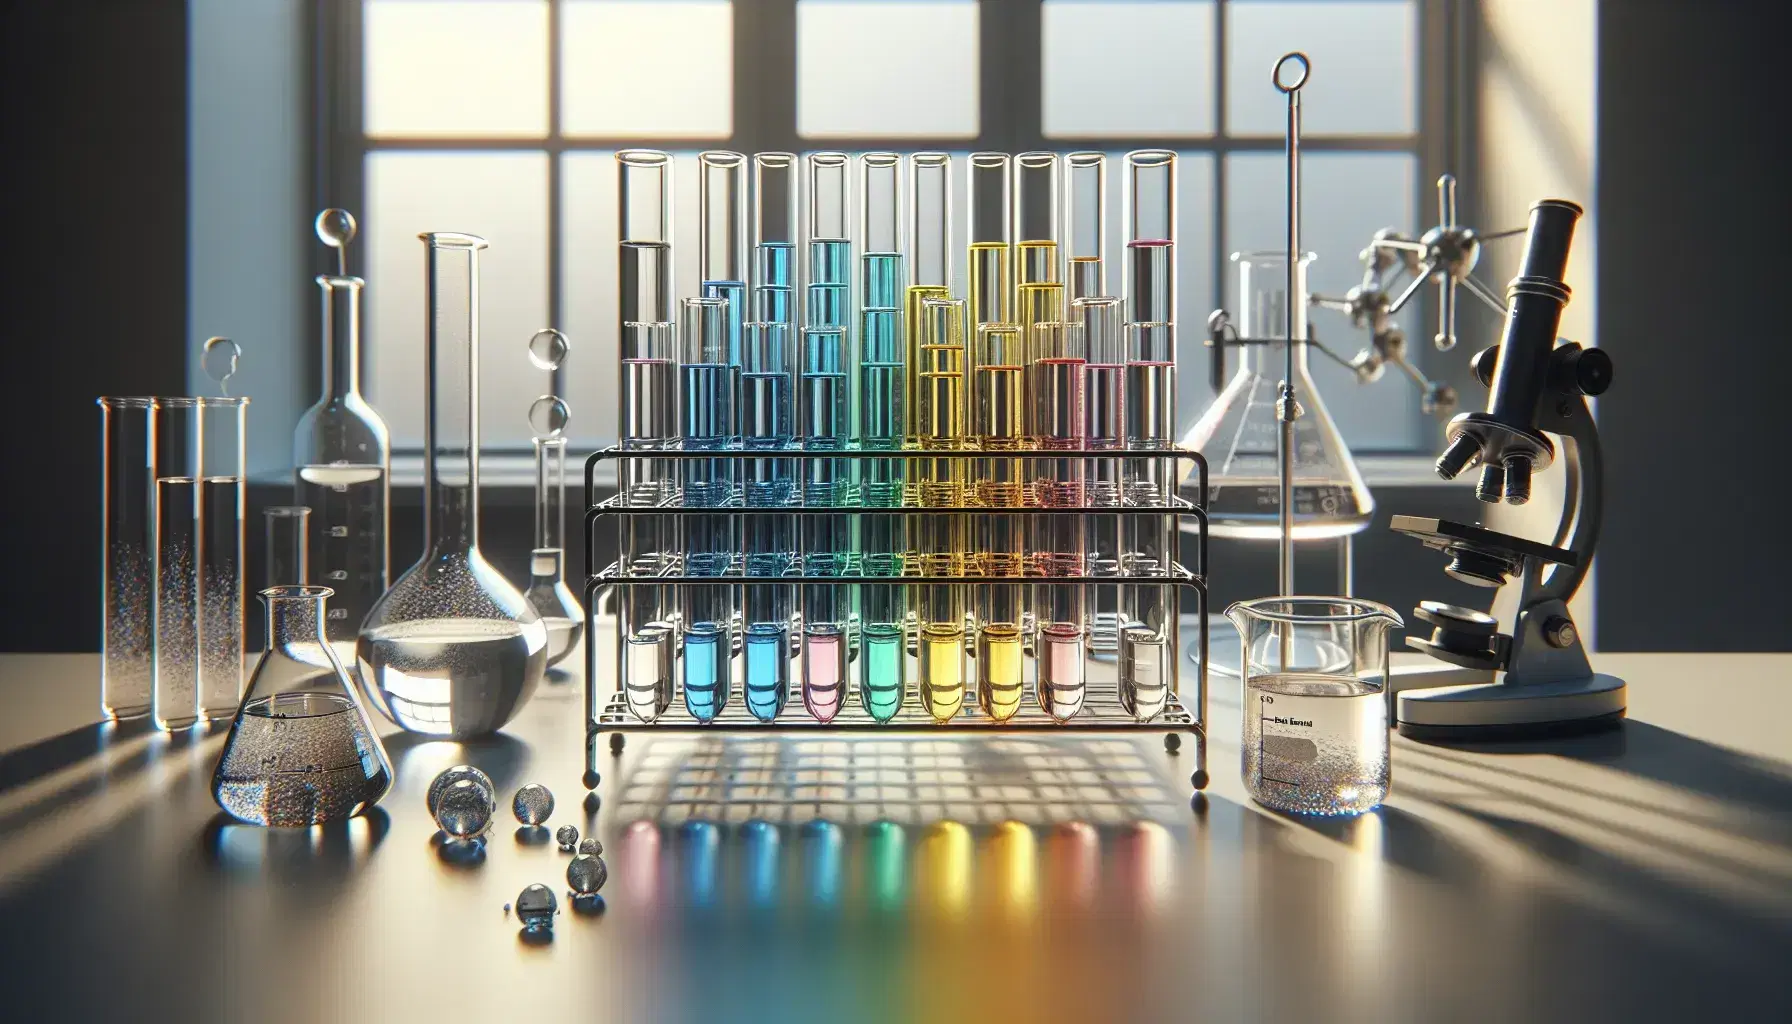 Tubos de ensayo con líquidos de colores en soporte metálico, matraz Erlenmeyer y balanza analítica en laboratorio químico, reflejando la luz.